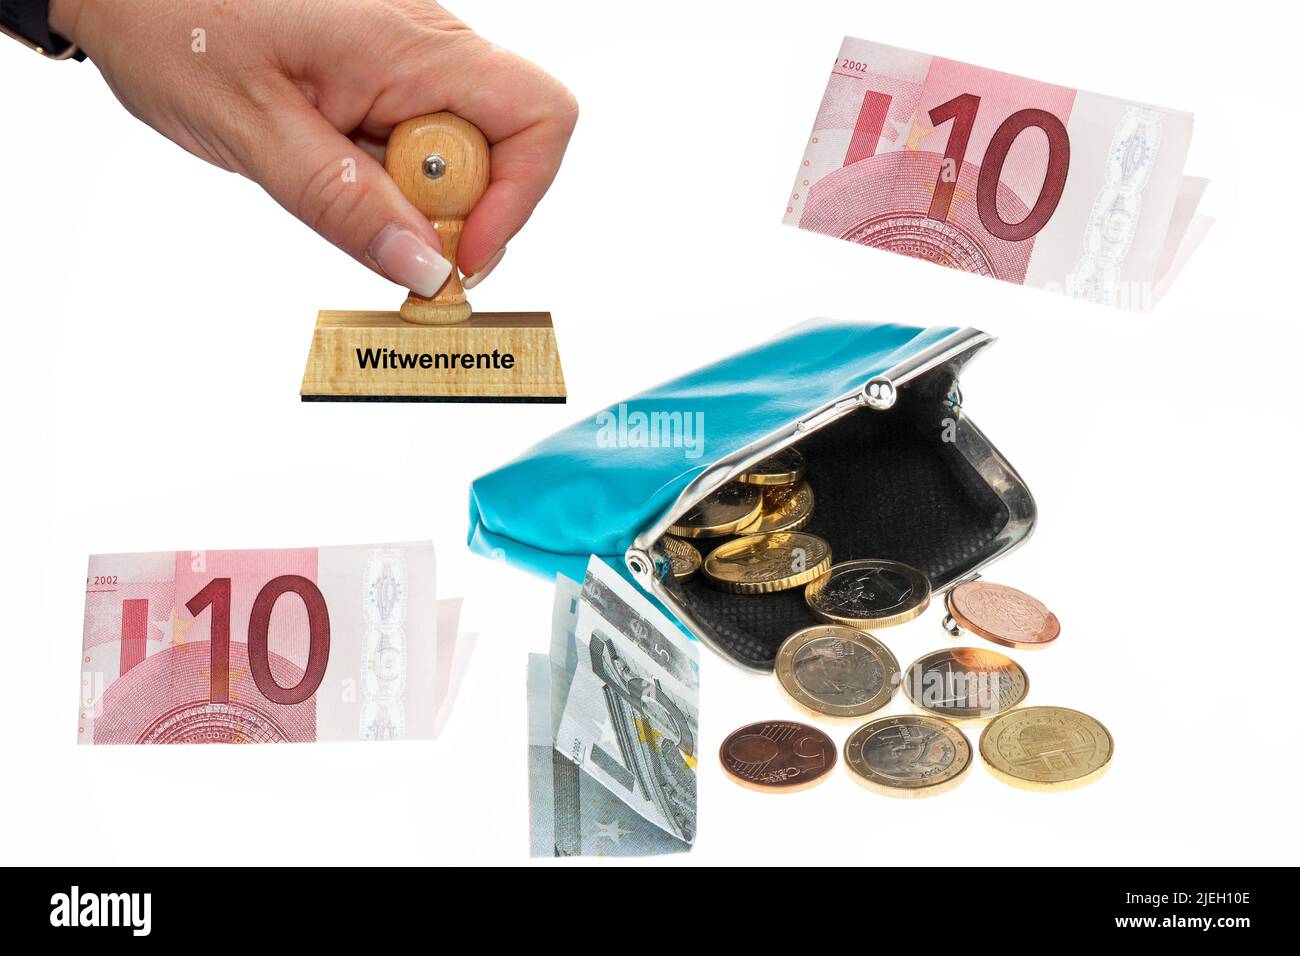 Witwenrente, Eine Geldbörse mit Euro-Geldscheinen und Münzen, Stempel, Frauenhand, Holzstempel, Stock Photo